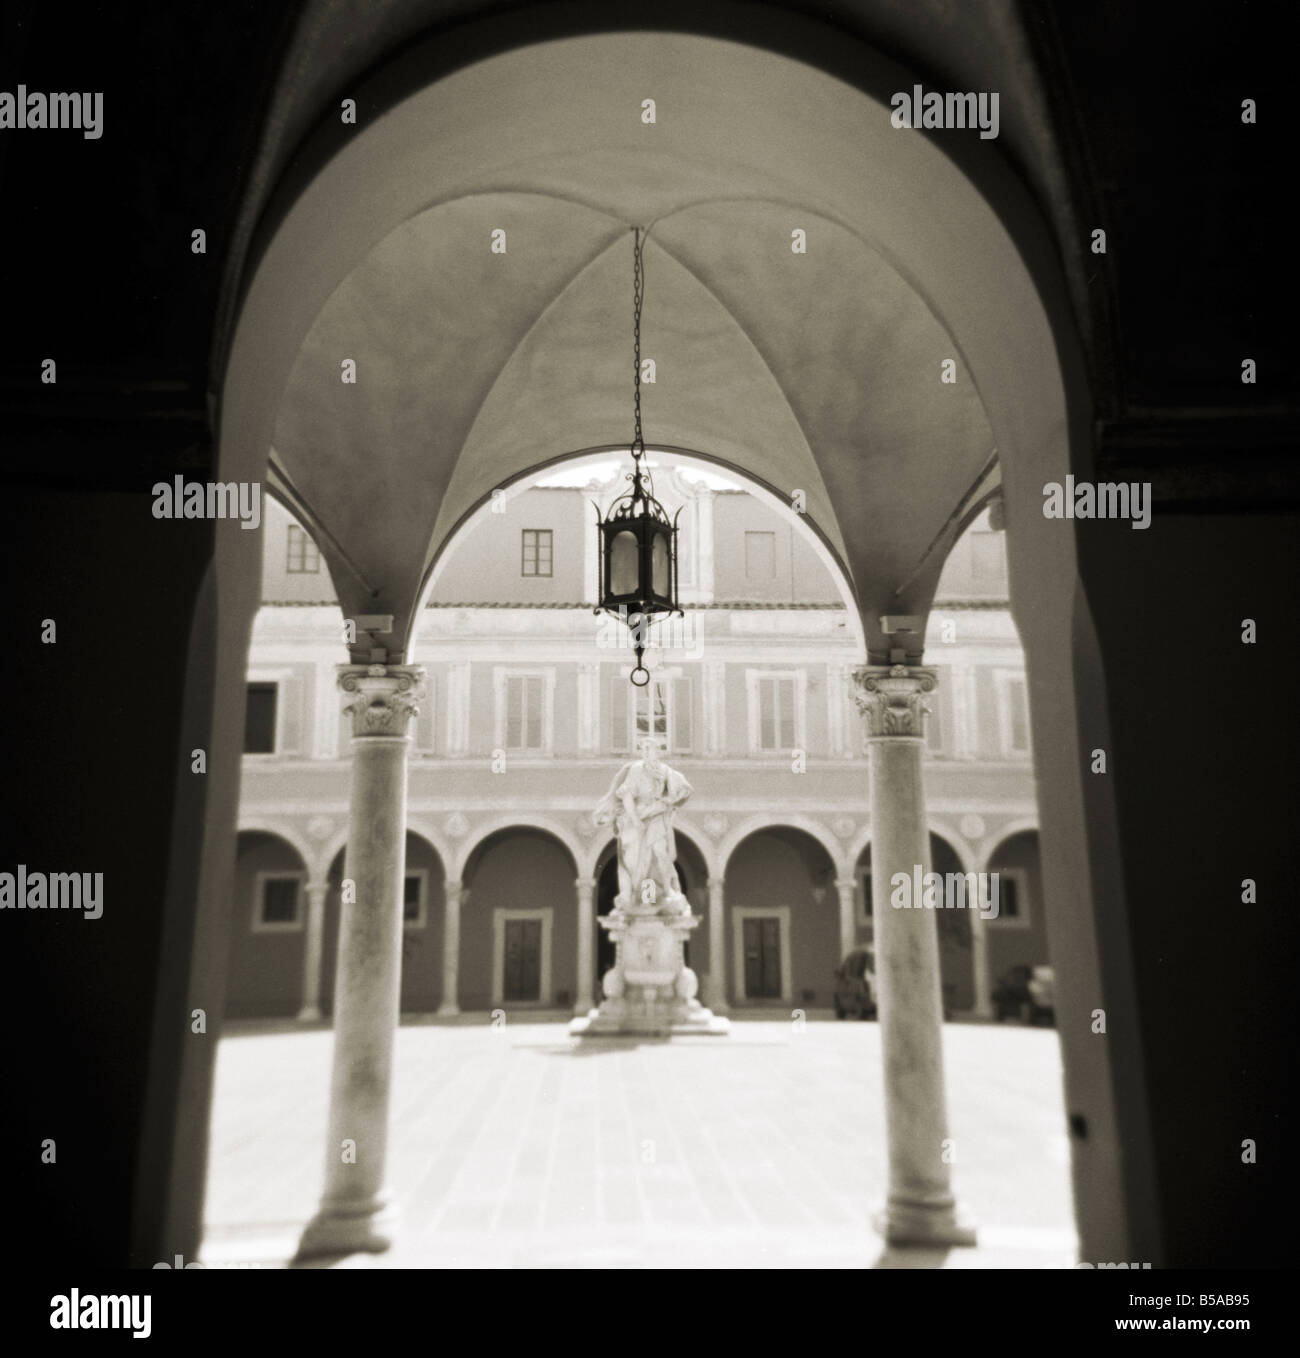 Bild aufgenommen mit einer Holga Mittelformat 120 Film Spielzeugkamera Ansicht durch Torbögen in sonnendurchfluteten Innenhof, Pisa, Toskana, Italien Stockfoto